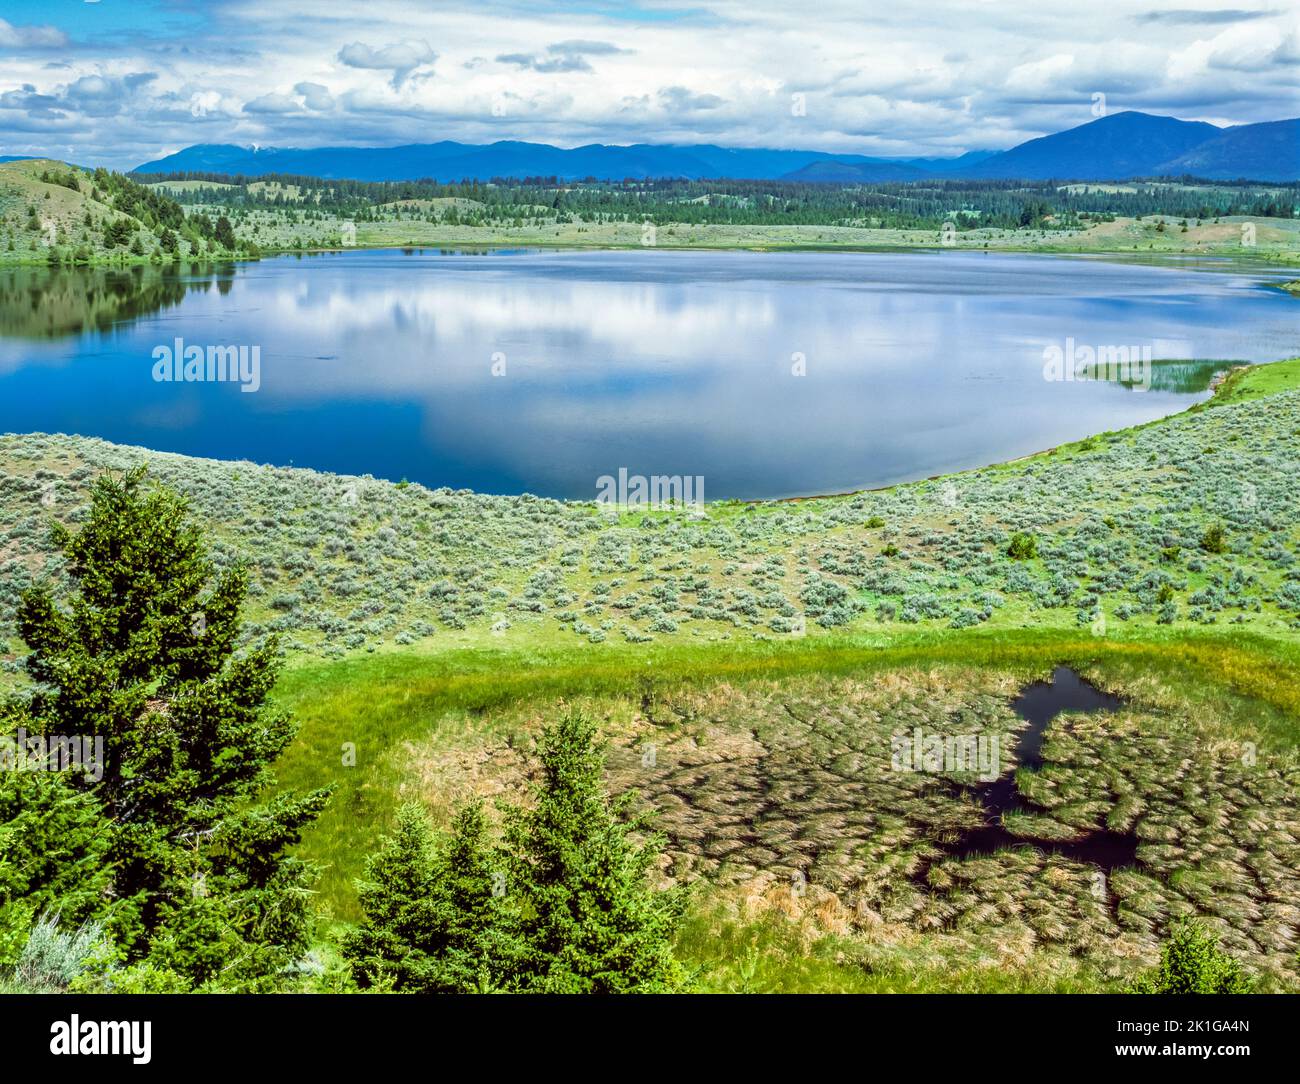 kleinschmidt lake in the blackfoot river valley near ovando, montana Stock Photo